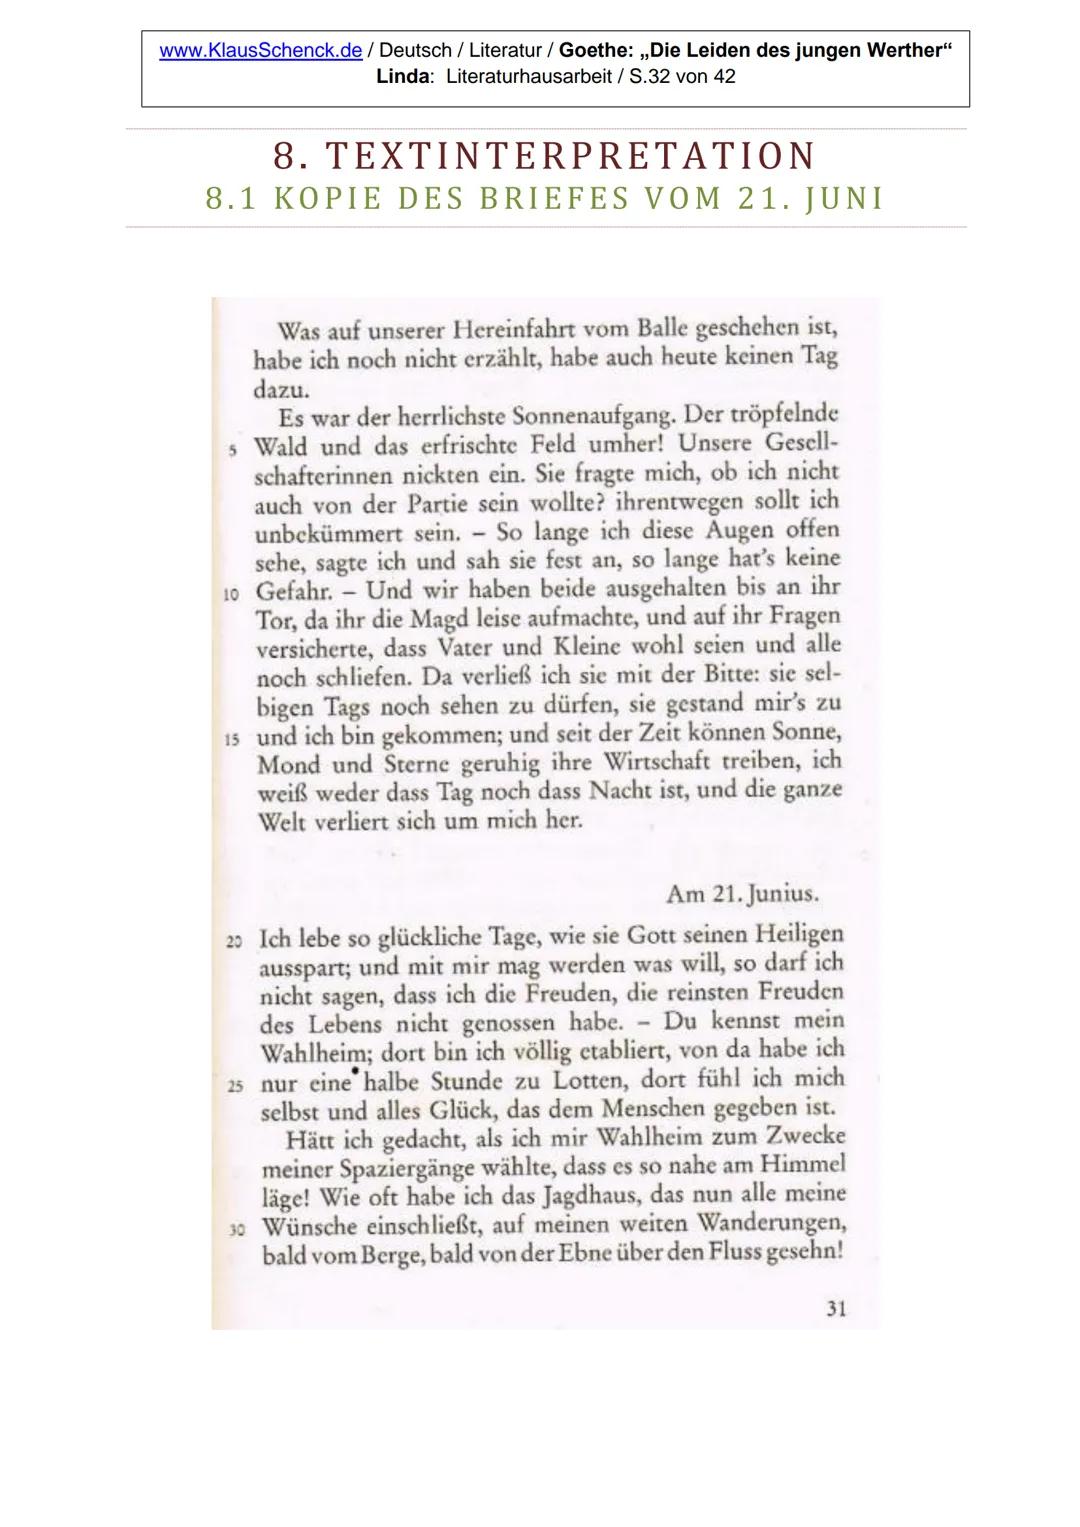 DIE LEIDEN DES JUNGEN WERTHER
LITERATURHAUSARBEIT
Dichter:
Johann Wolfgang von Goethe
Titel: Die Leiden des jungen Werther
Verfasser: Linda
